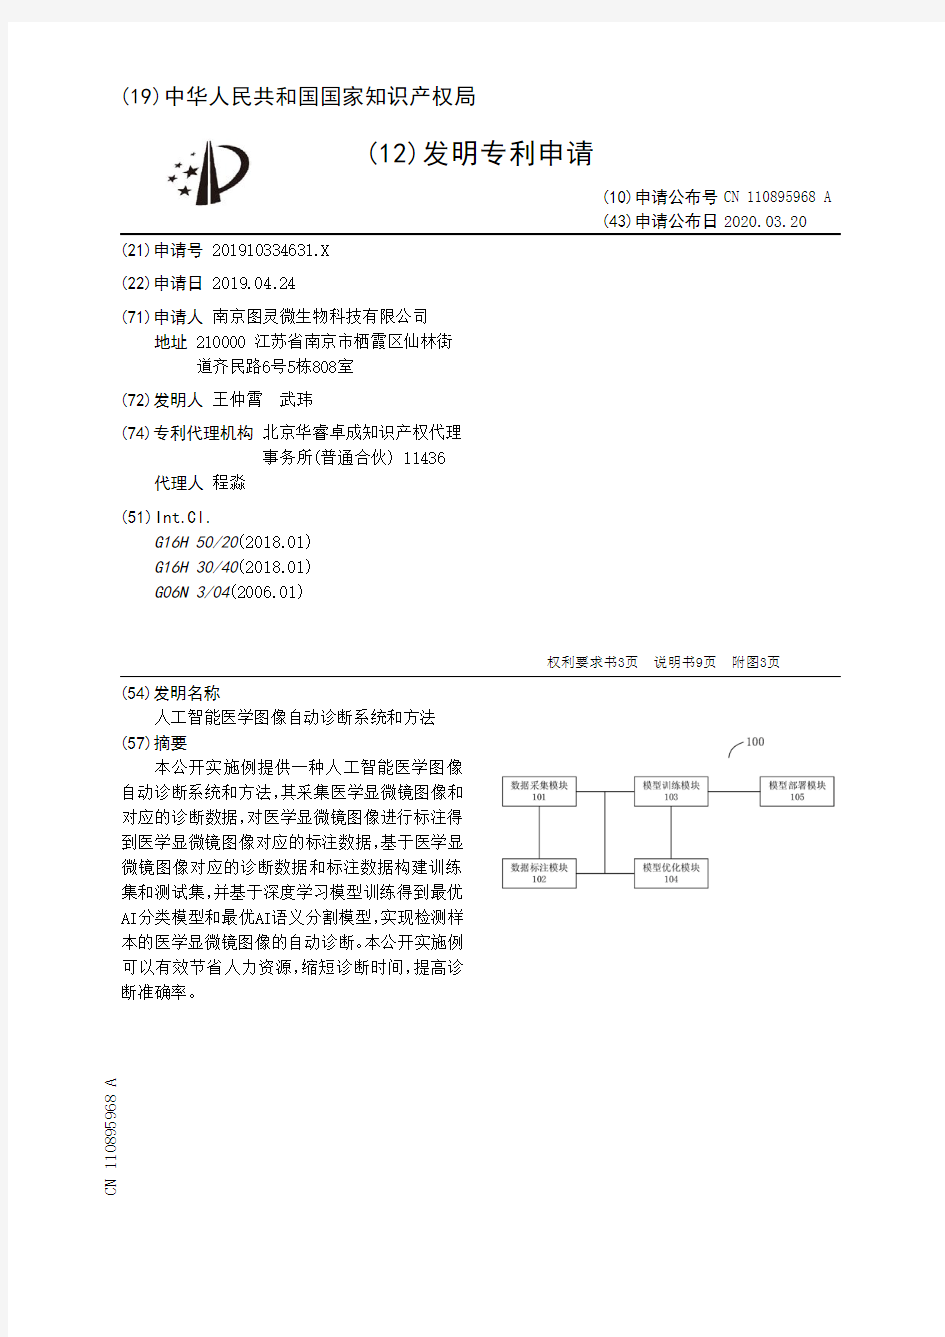 【CN110895968A】人工智能医学图像自动诊断系统和方法【专利】